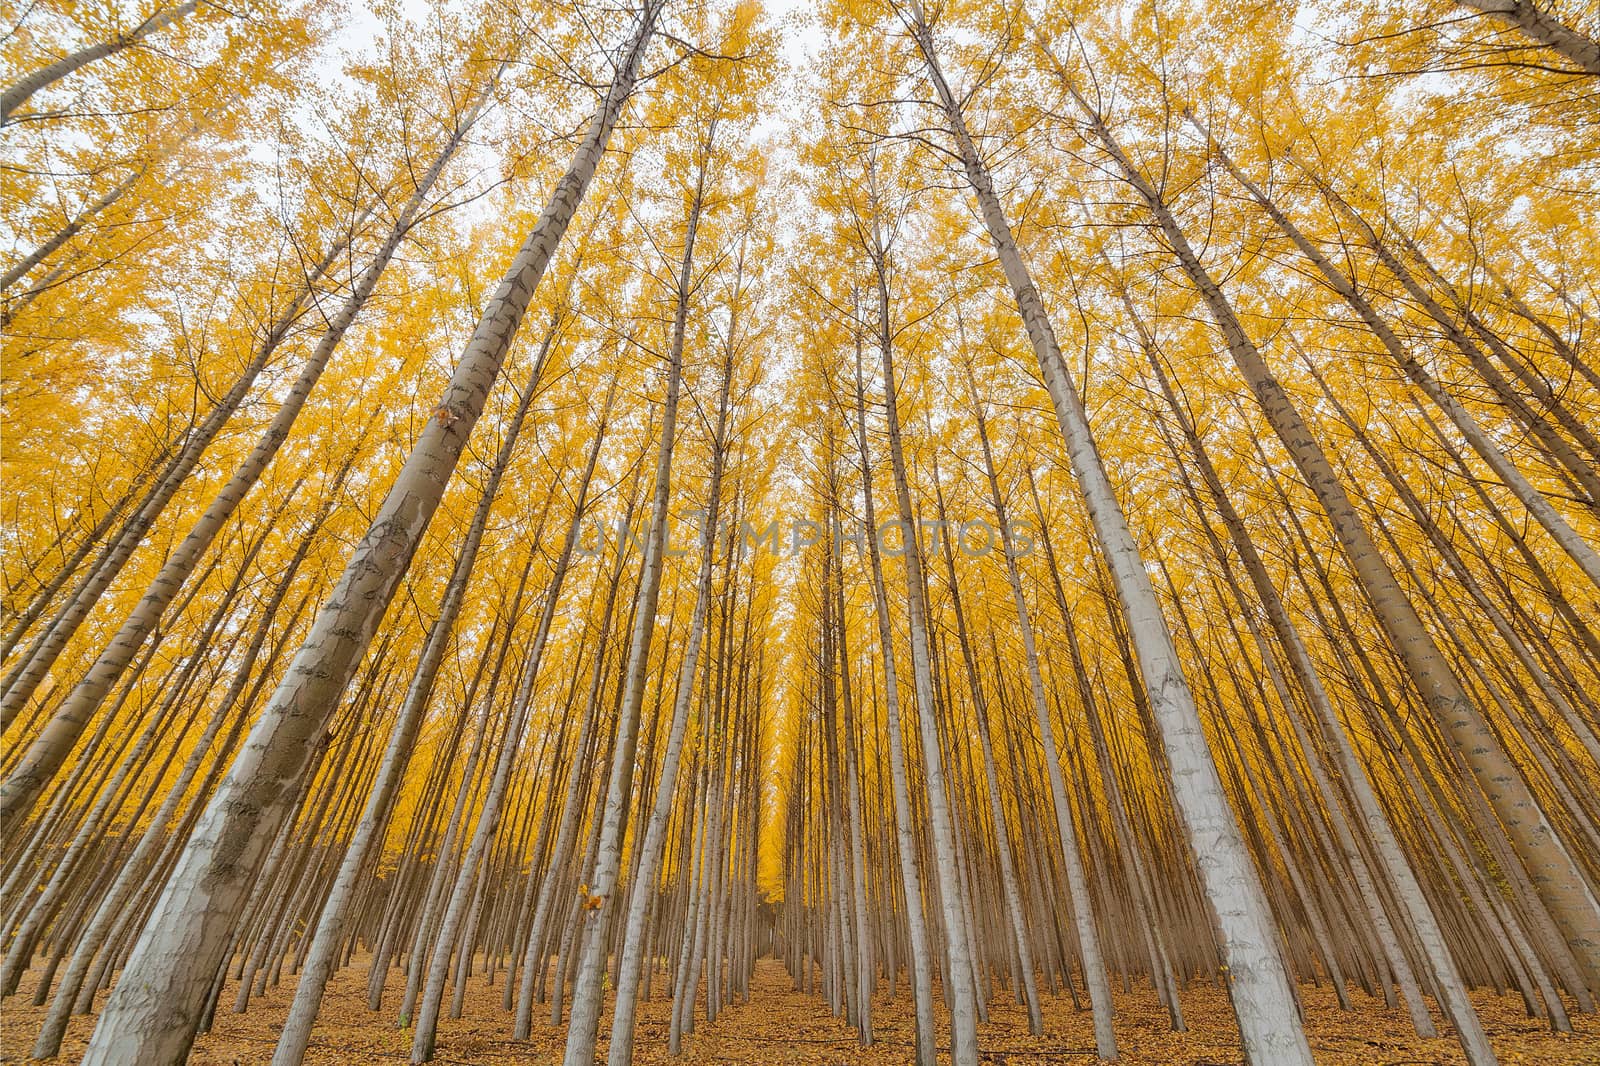 Poplar Tree Farm Symmetry in Oregon by jpldesigns